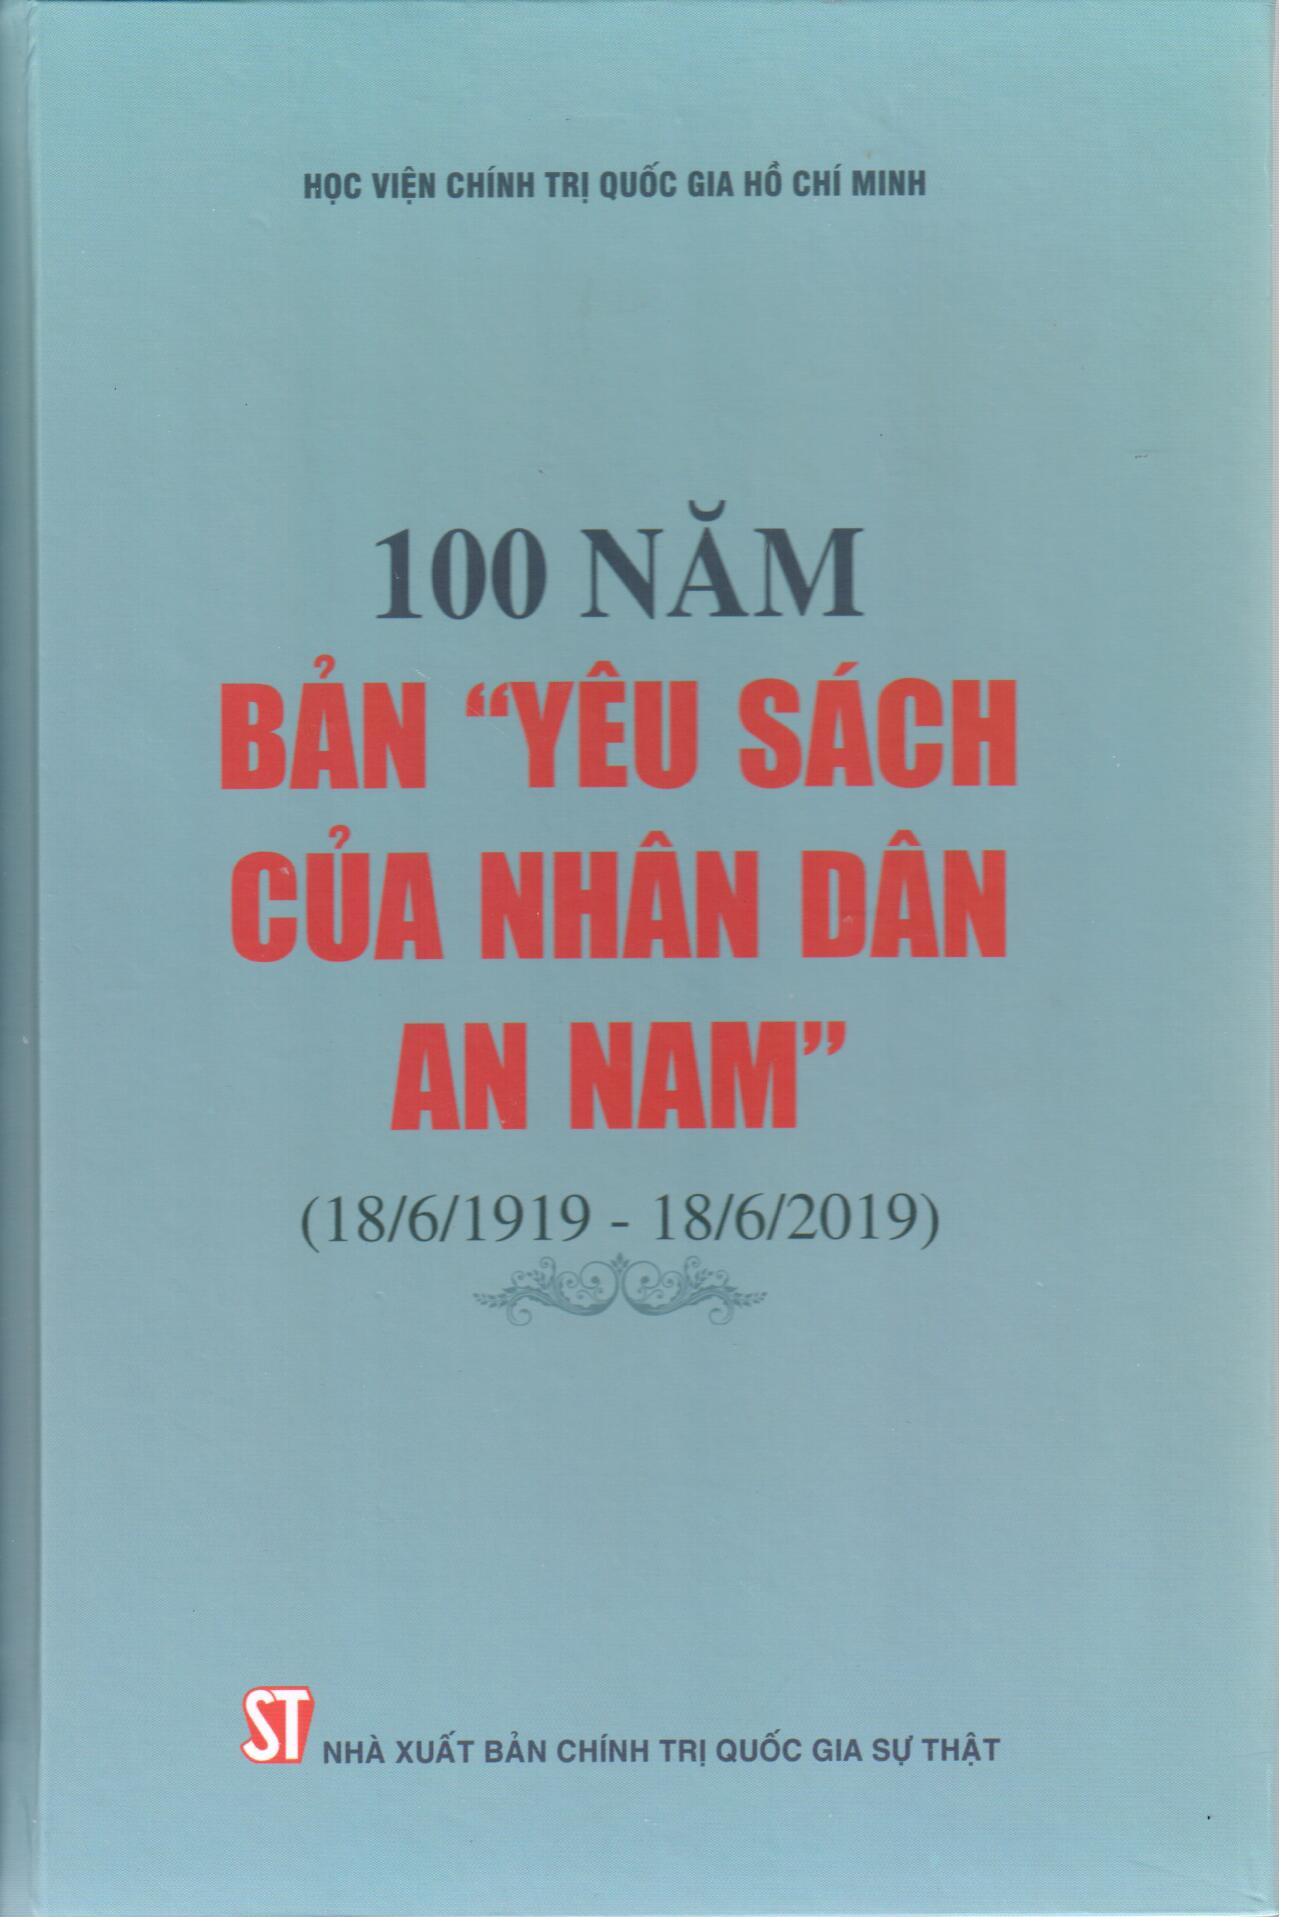 100 năm bản “Yêu sách của nhân dân An Nam” (18/6/1919 - 18/6/2019)